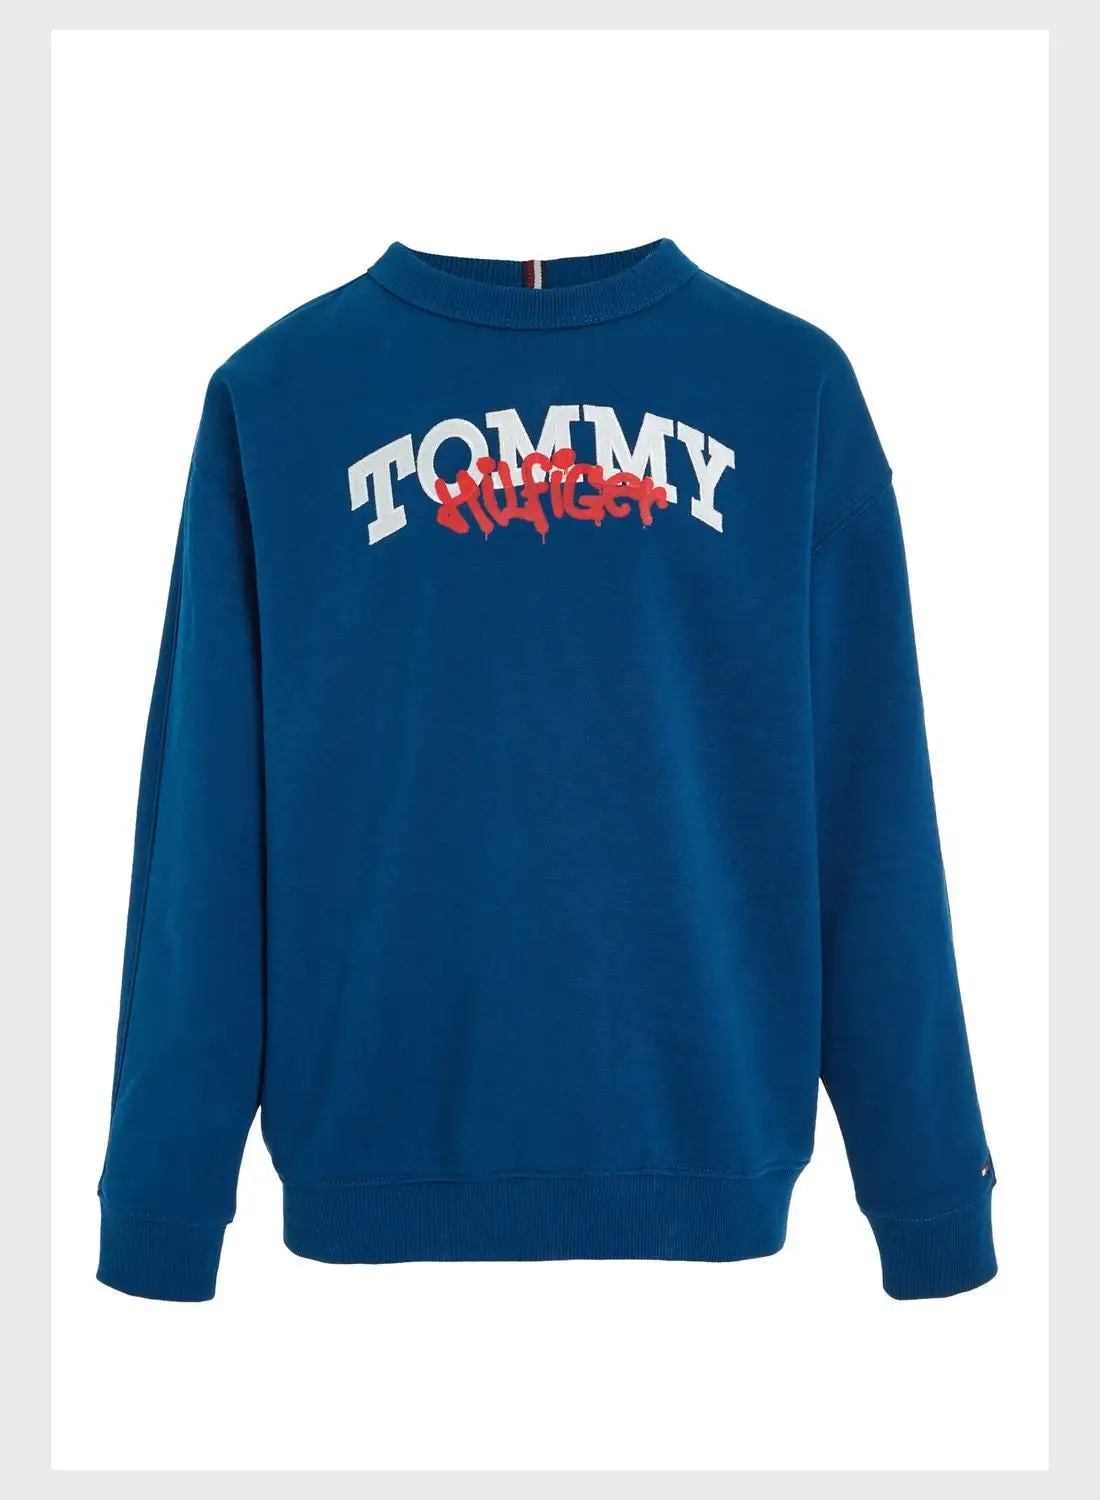 TOMMY HILFIGER Youth Logo Sweatshirt